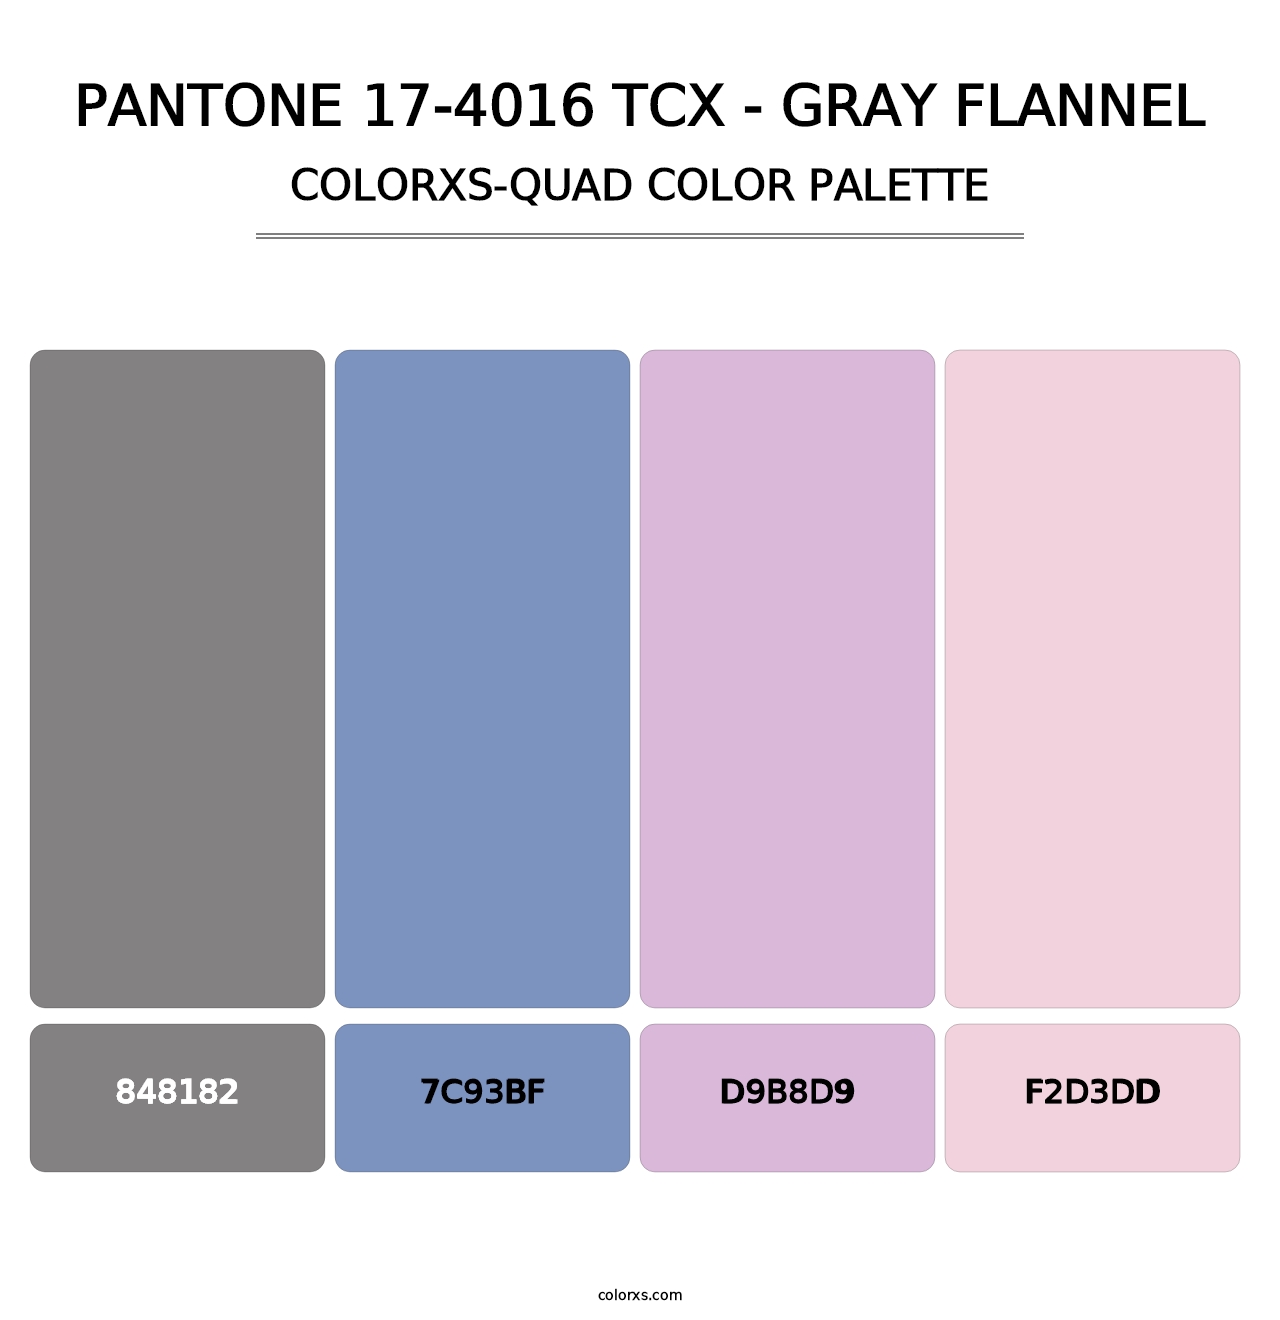 PANTONE 17-4016 TCX - Gray Flannel - Colorxs Quad Palette